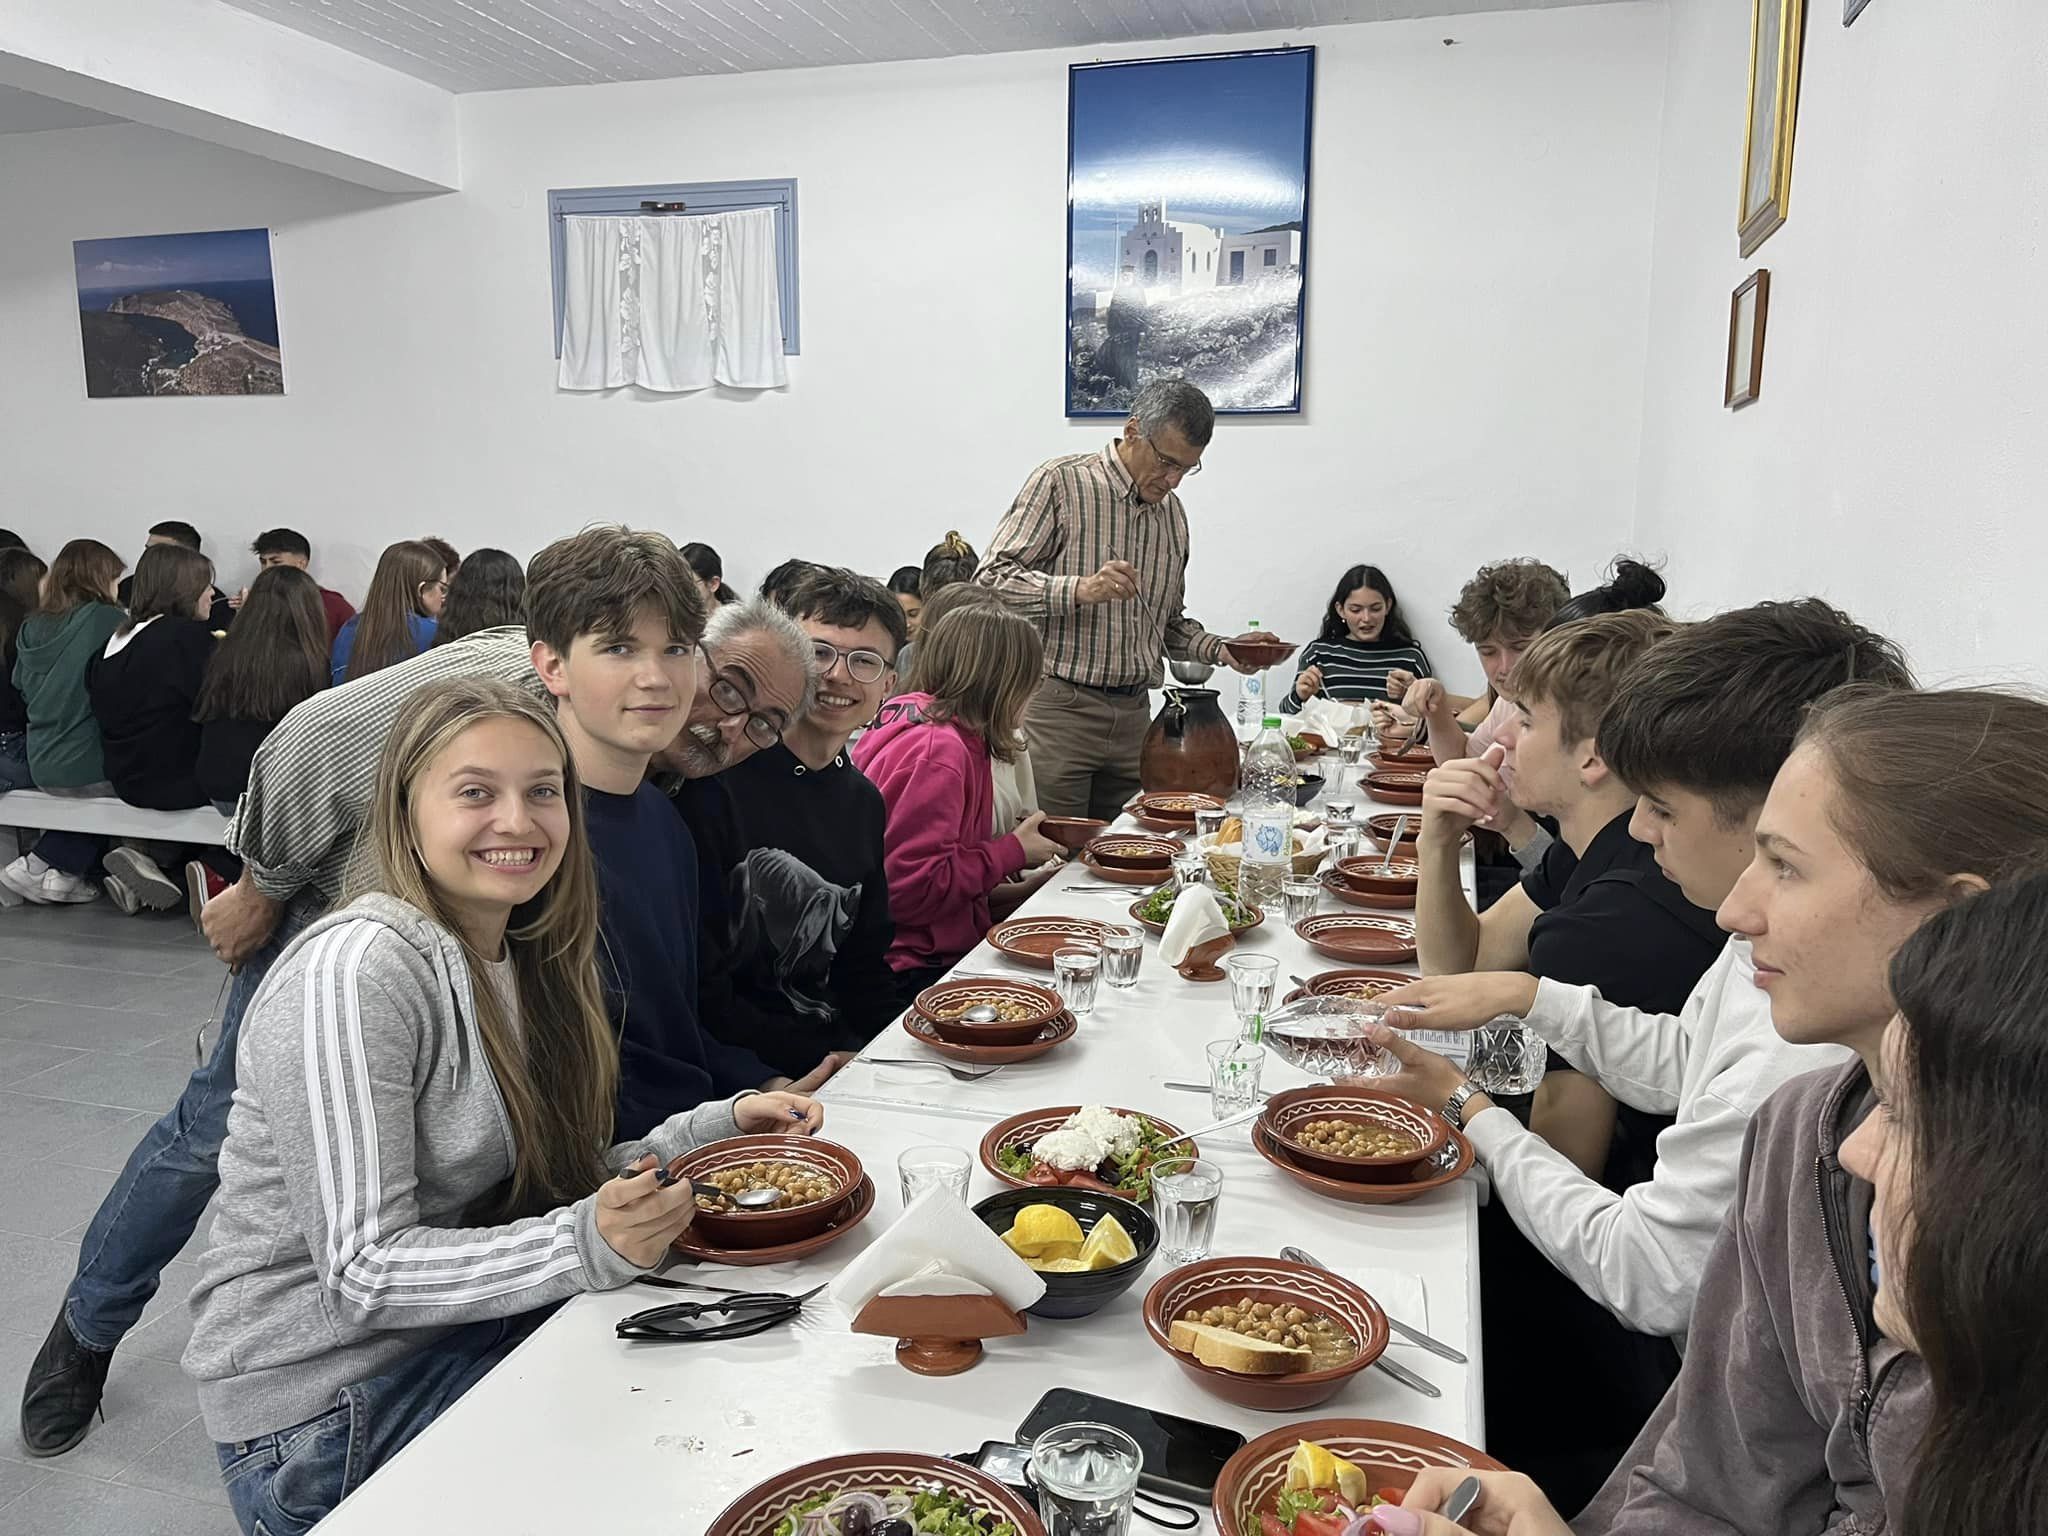 W dniach 14-21 kwietnia grupa 11 uczniów pod opieką p. Agnieszki Gemborys i p. Katarzyny Ścisłowicz spędziła wspaniałe chwile w Grecji na pięknej wyspie Sifnos. Wyjazd odbył się w ramach projektu Erasmus+ „Troskliwa Szkoła - Zjednoczeni w Różnorodności,”, w greckiej restauracji